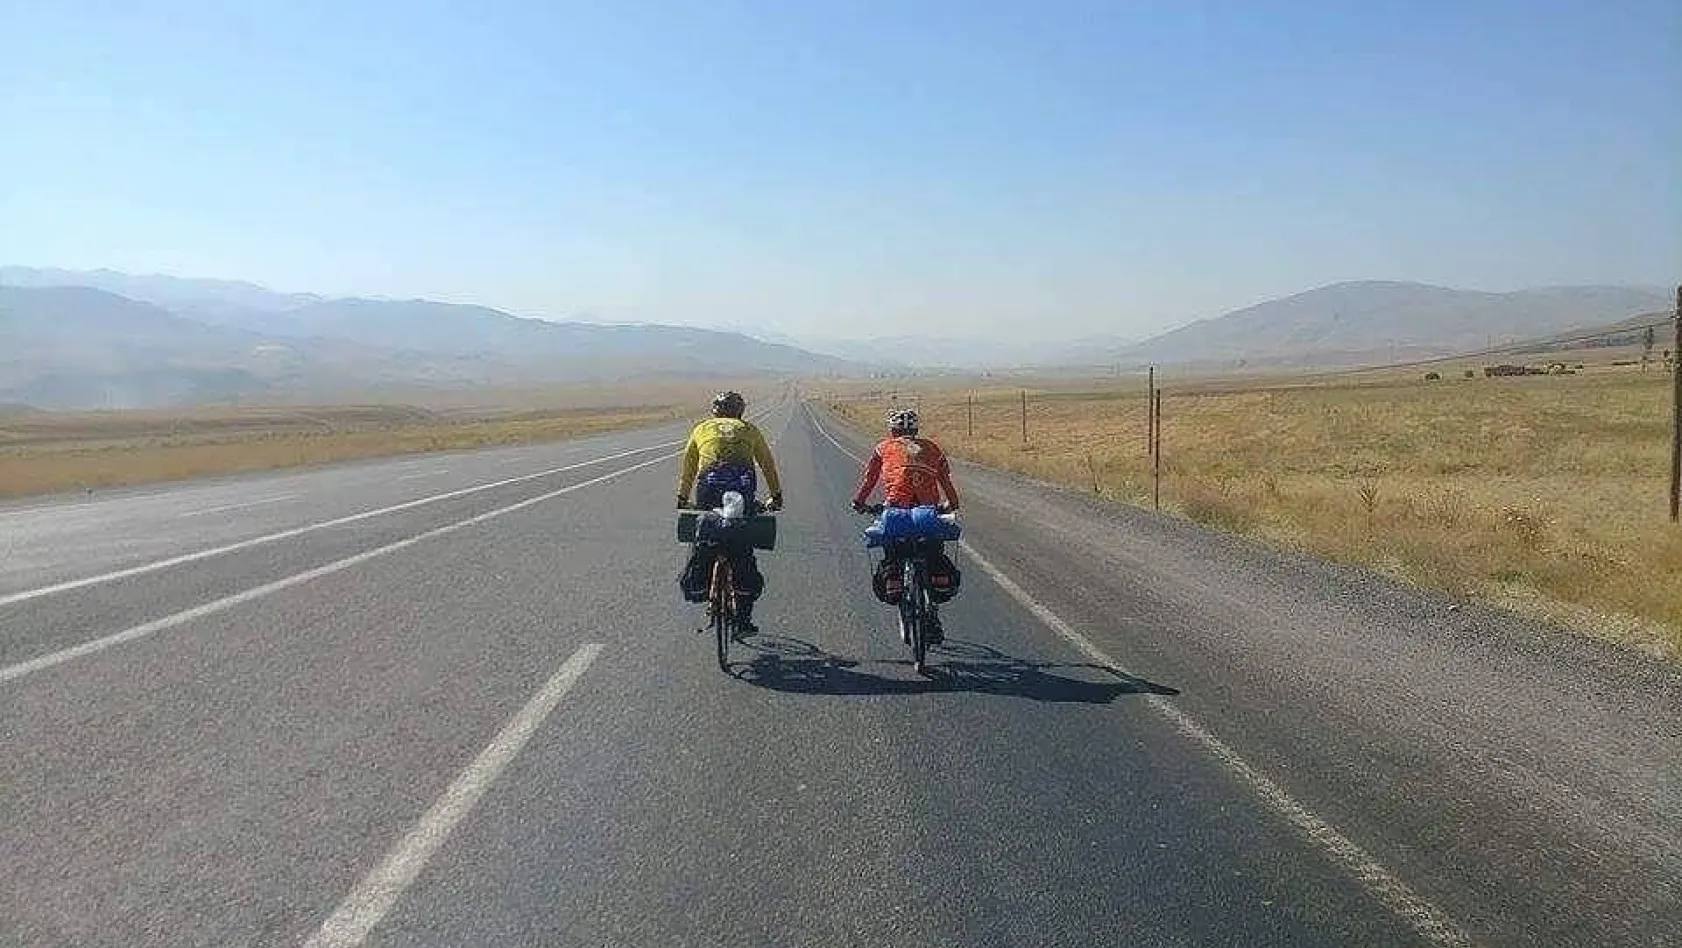 Tigris Bisiklet Kulübü Karacadağ'a pedal çevirecek
